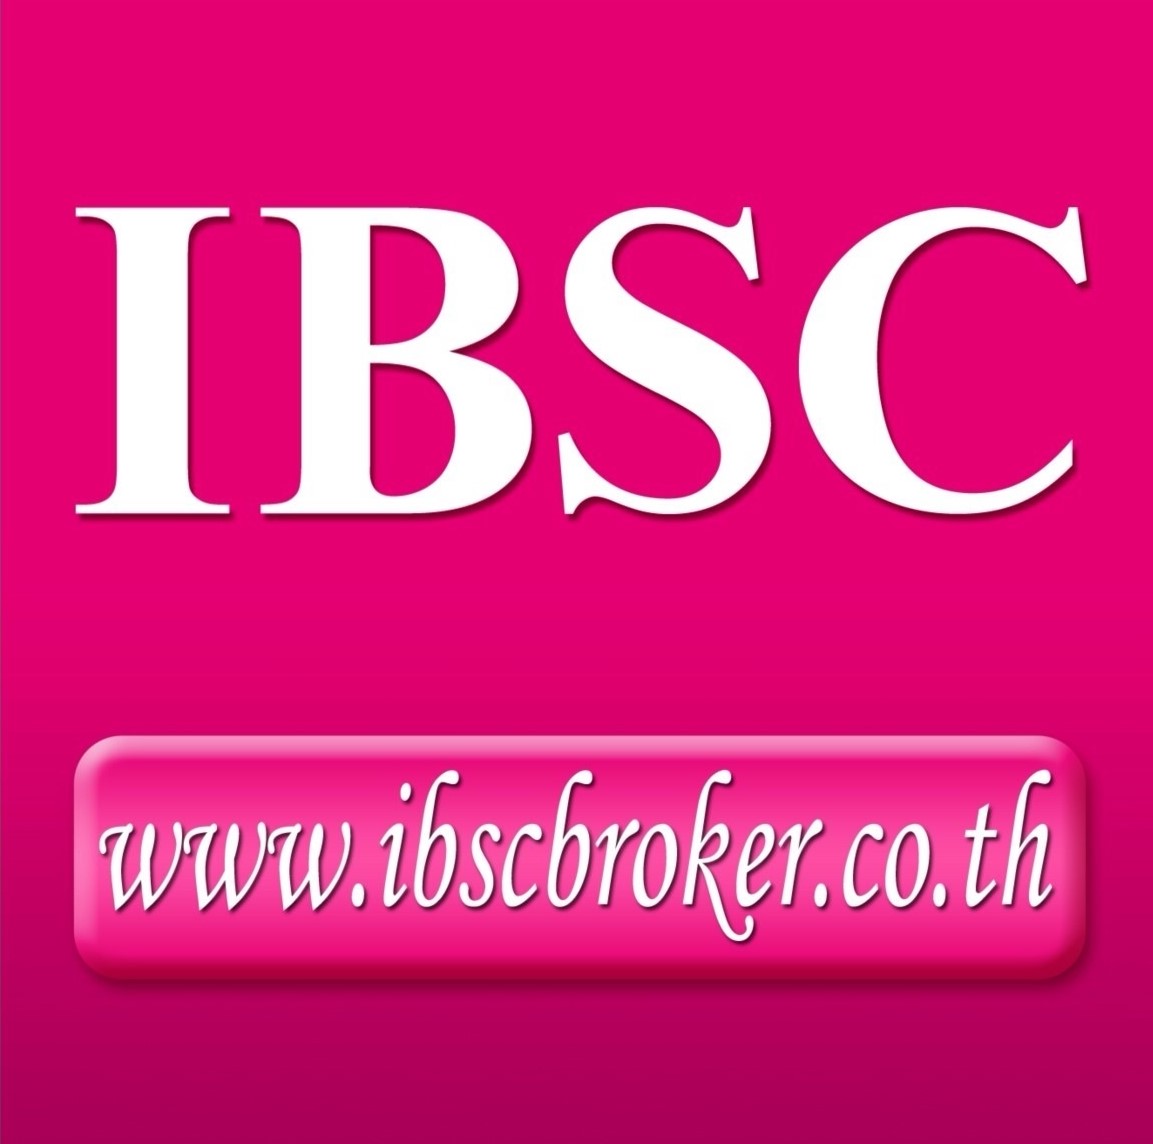 IBSC Broker Logo